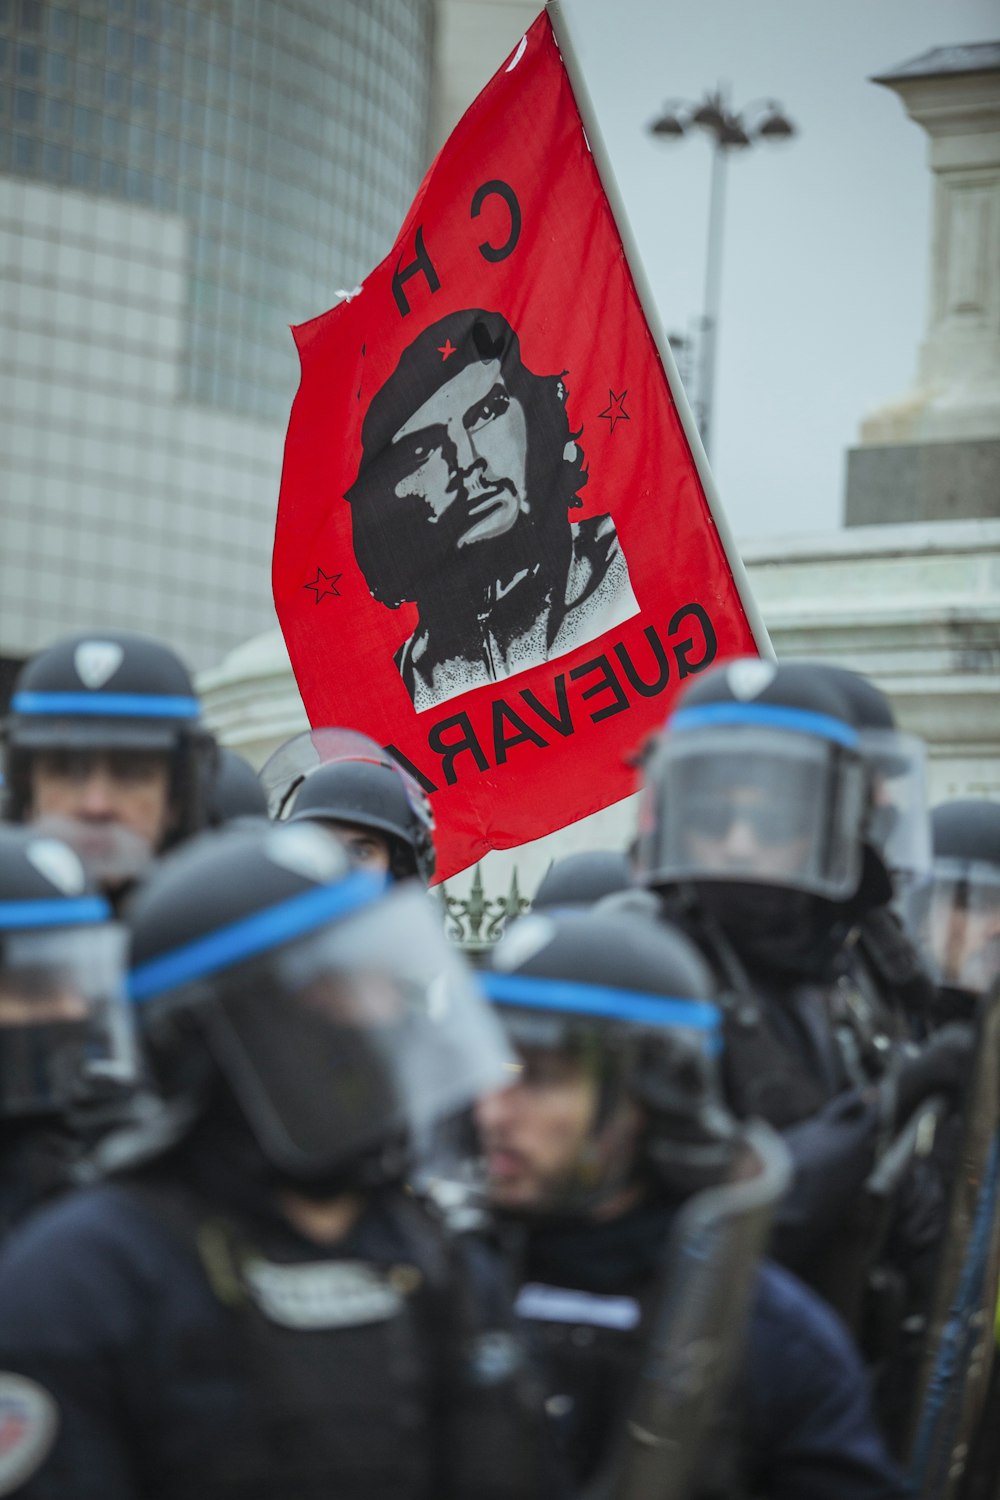 drapeau rouge de Che Guevara près d’un groupe de policiers pendant la journée